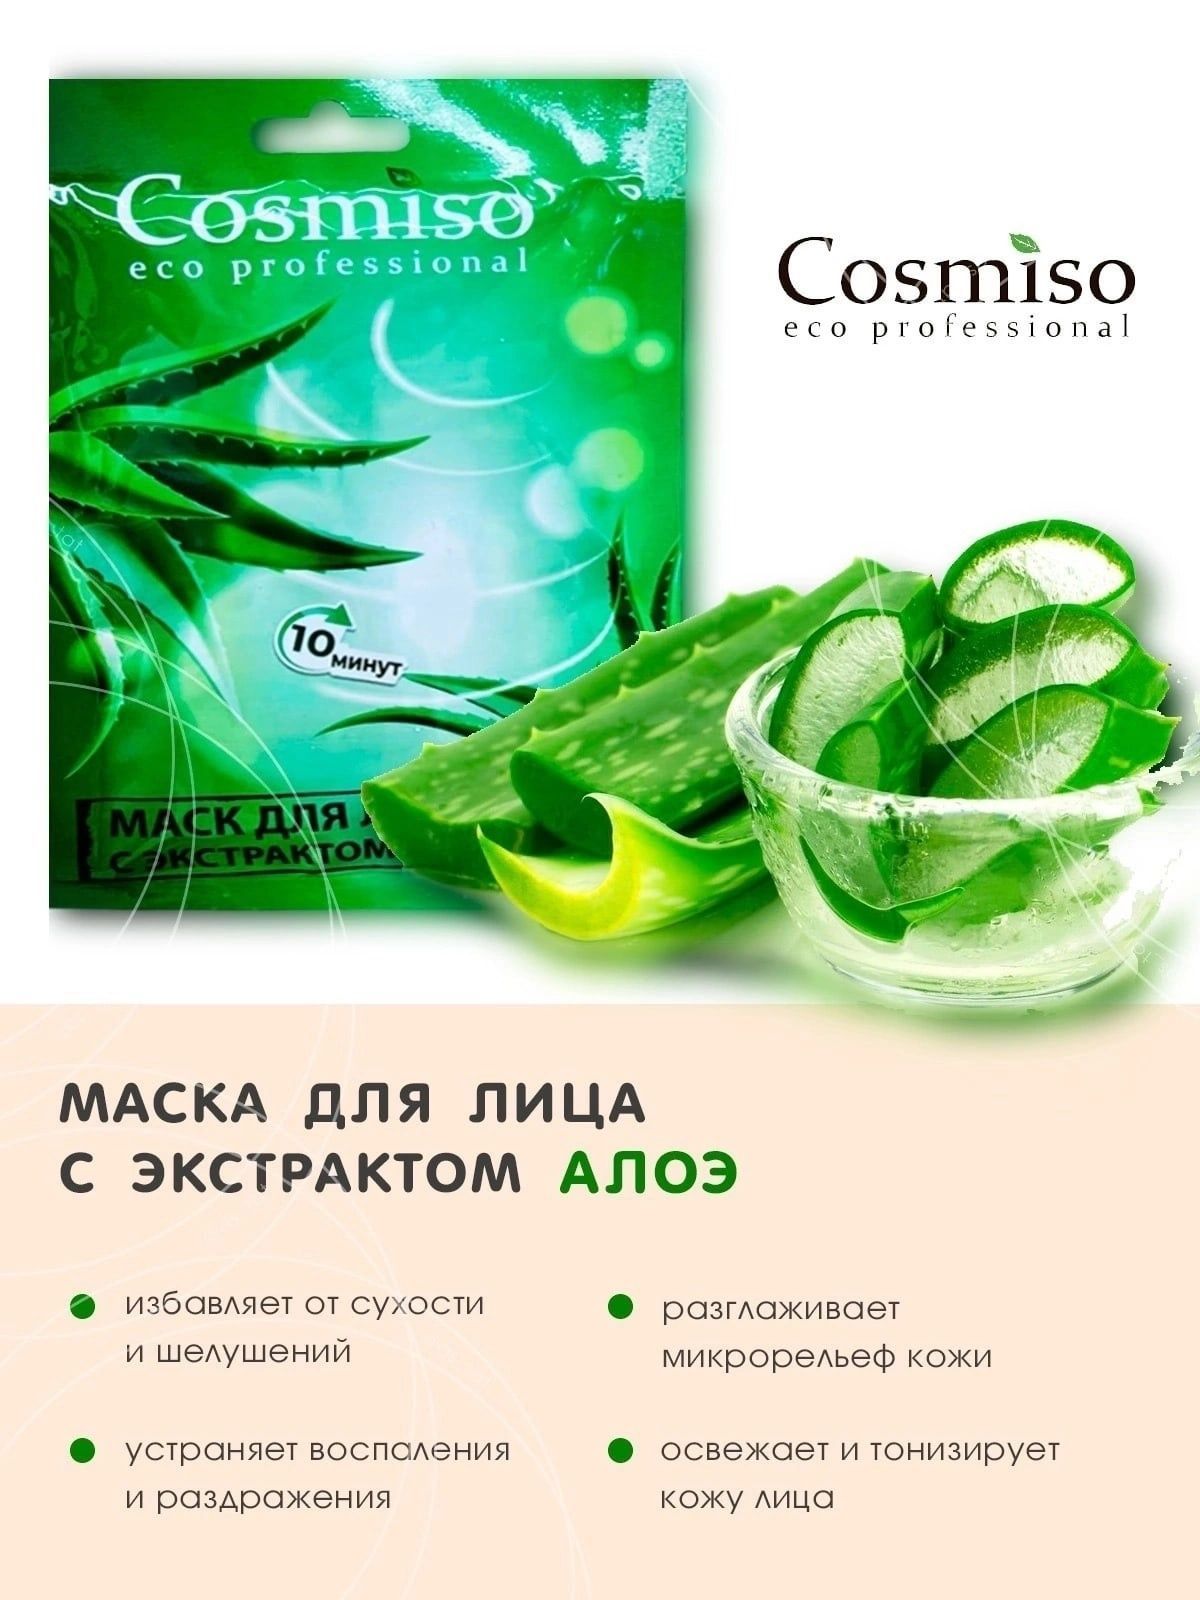 Тканевые маски cosmiso. Cosmiso / набор тканевых масок для лица. Cosmiso Eco professional маска для лица. Cosmiso капсулы для лица. Cosmiso eco professional